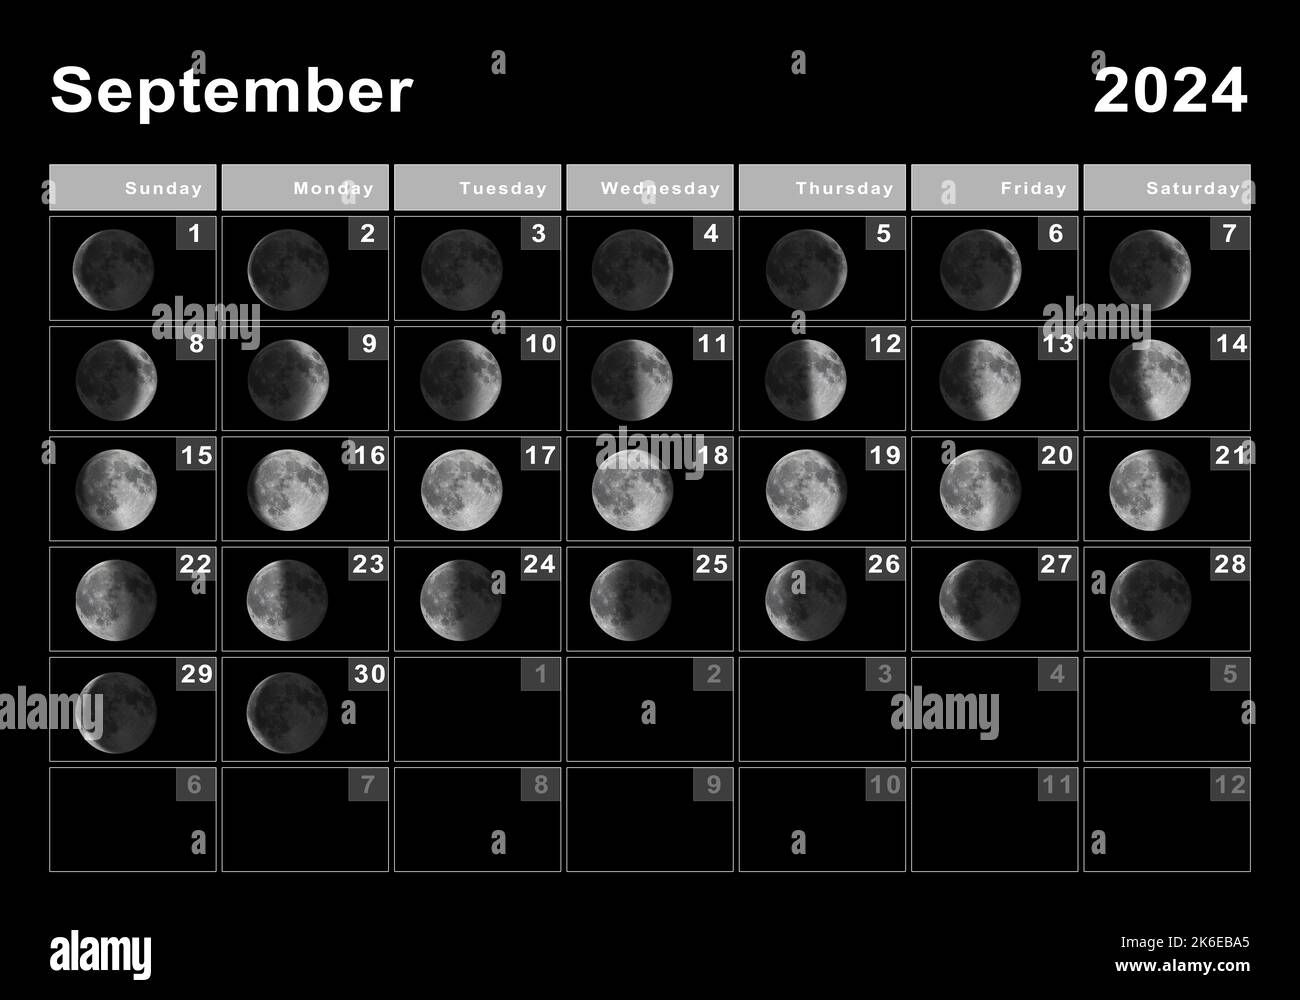 Calendar For September 2024 Showing Full Moon Donna Gayleen